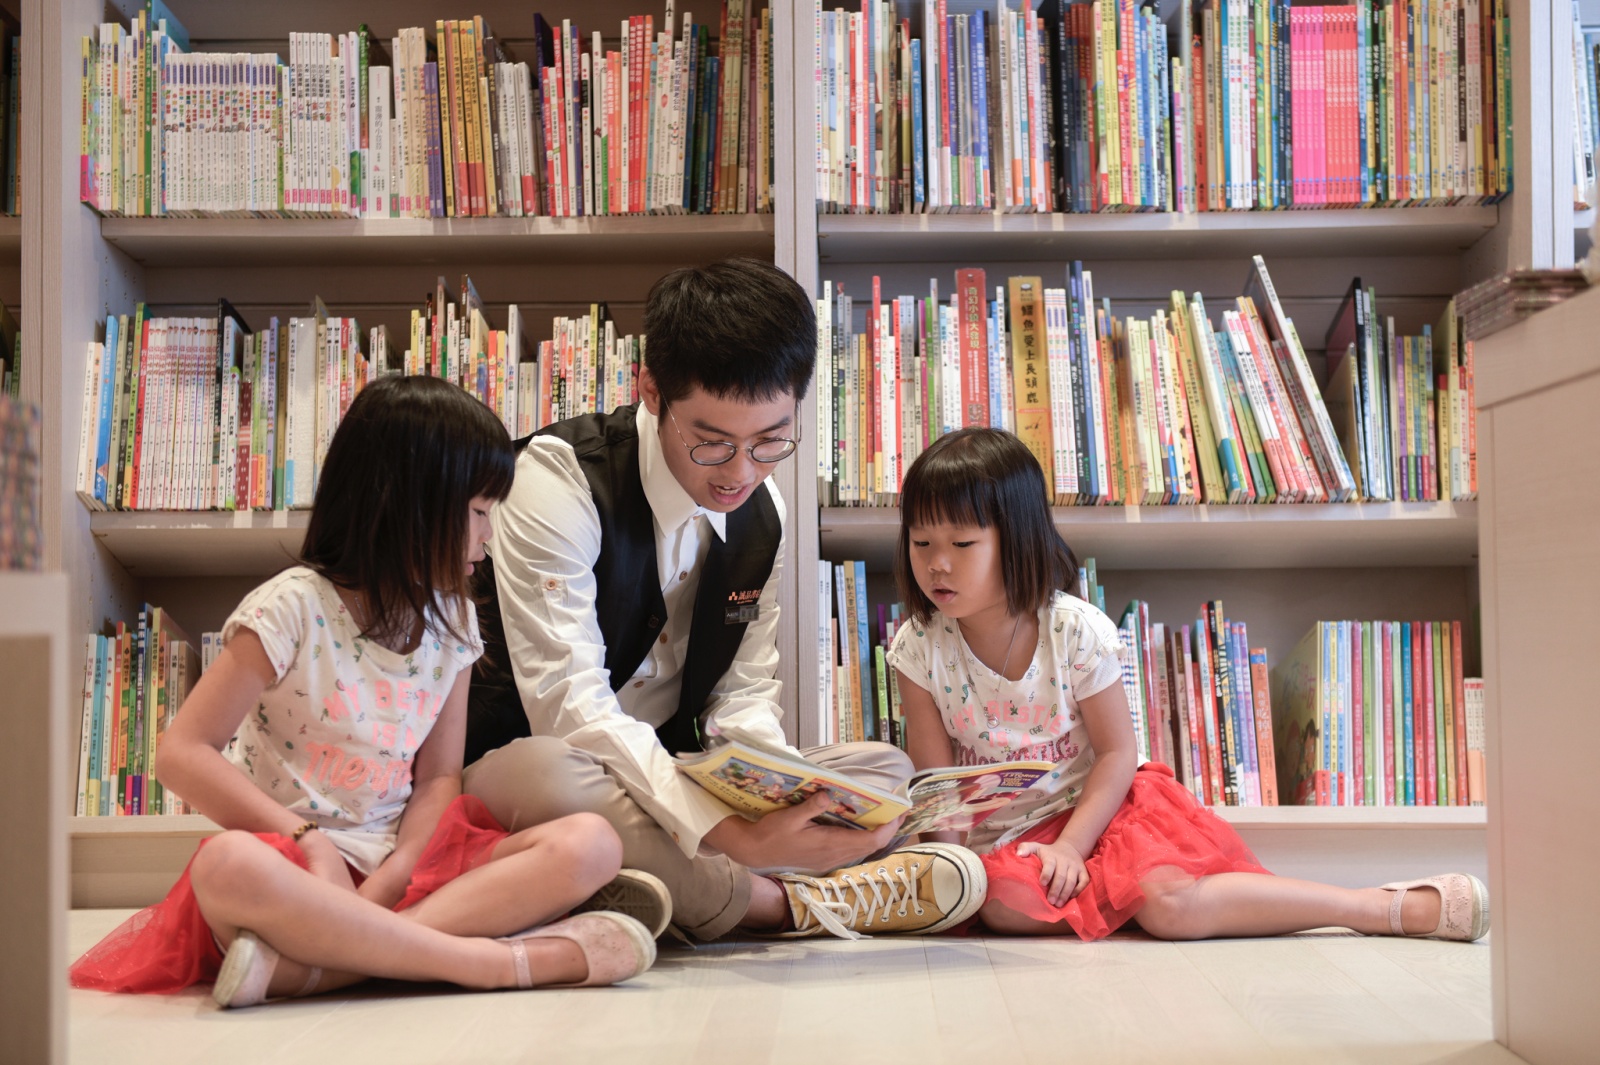 新店裕隆城 誠品生活新店 4F書店兒童書店打造親子共讀 探索小學校